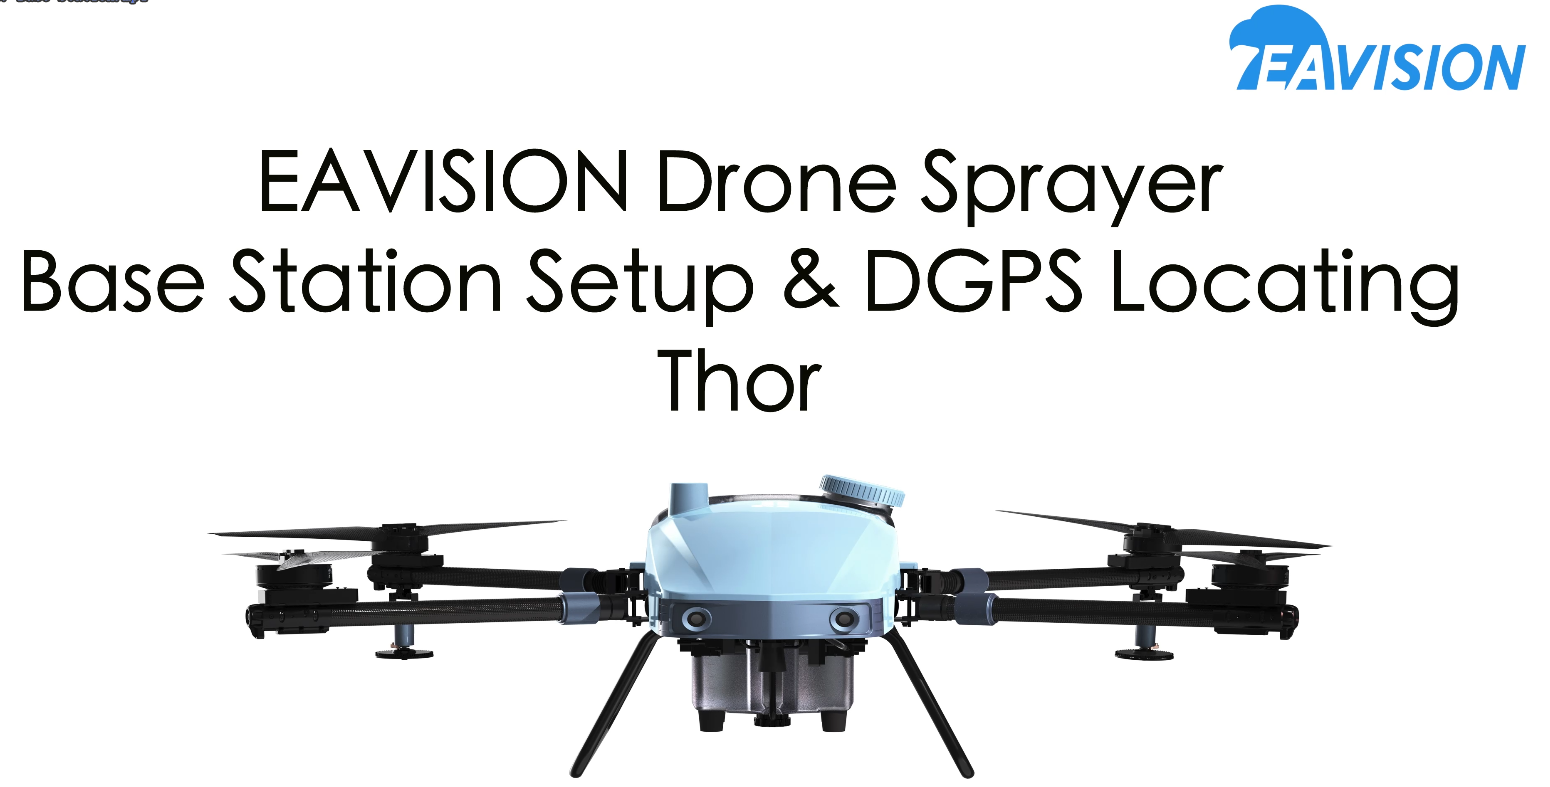 EAVISION: configuración de la estación base thor y localización de DGPS
